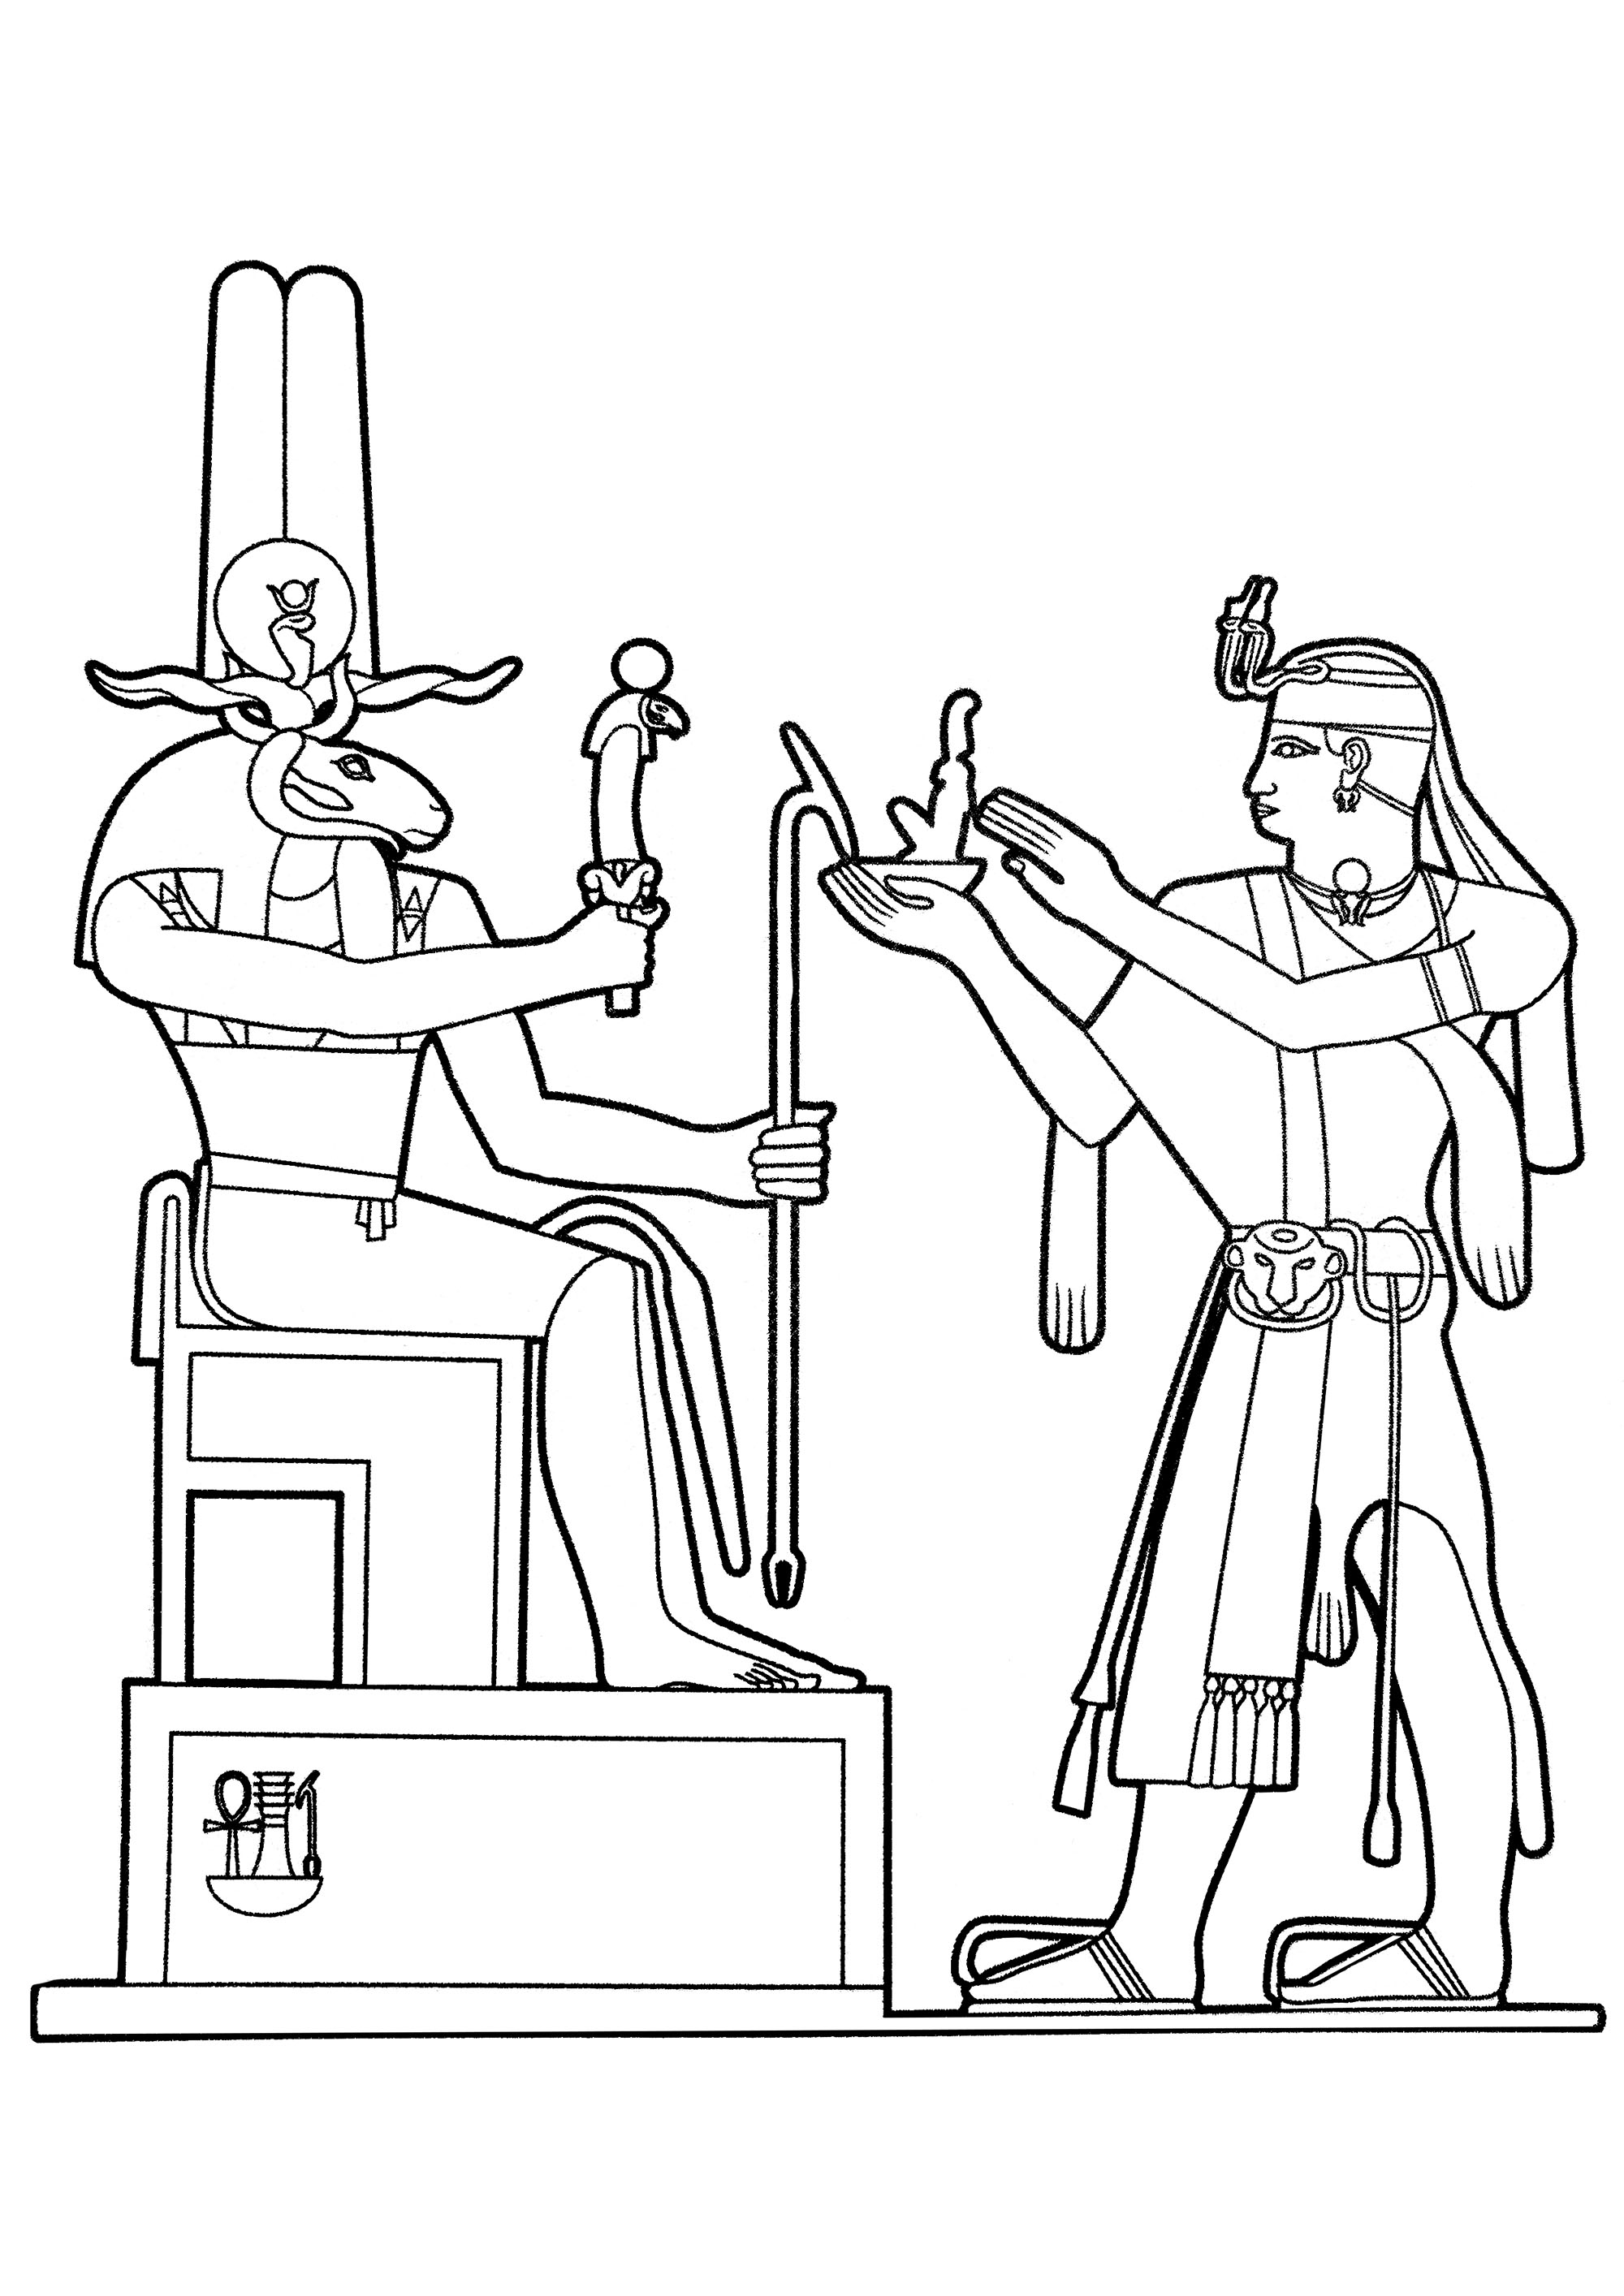 O deus egípcio Khnum a receber uma oferta. .Khnum é um deus de cornos rectos e cabeça de carneiro que é frequentemente retratado criando humanos na sua roda de oleiro, Khnum emergiu de duas cavernas no mundo subterrâneo no oceano de Nun.